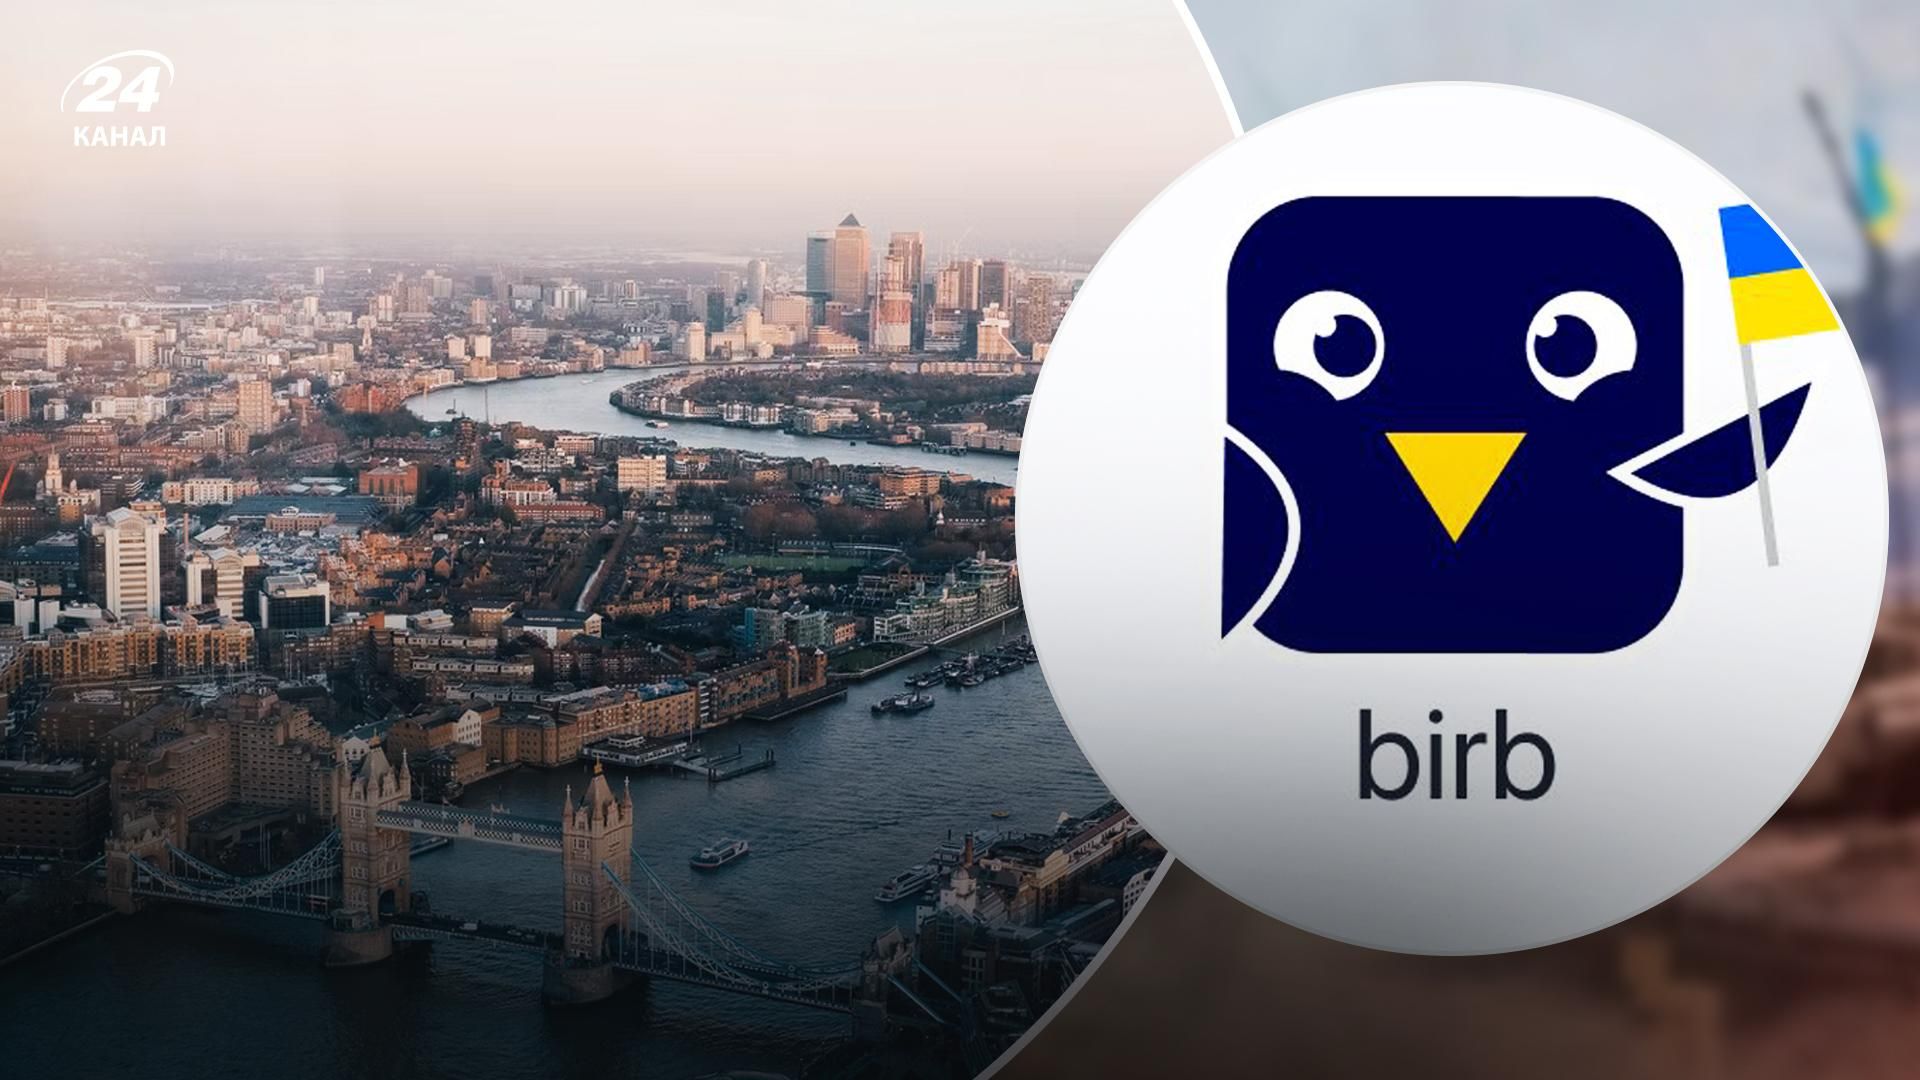 В Лондоне запустили украинское приложение для аренды жилья bird - Недвижимость